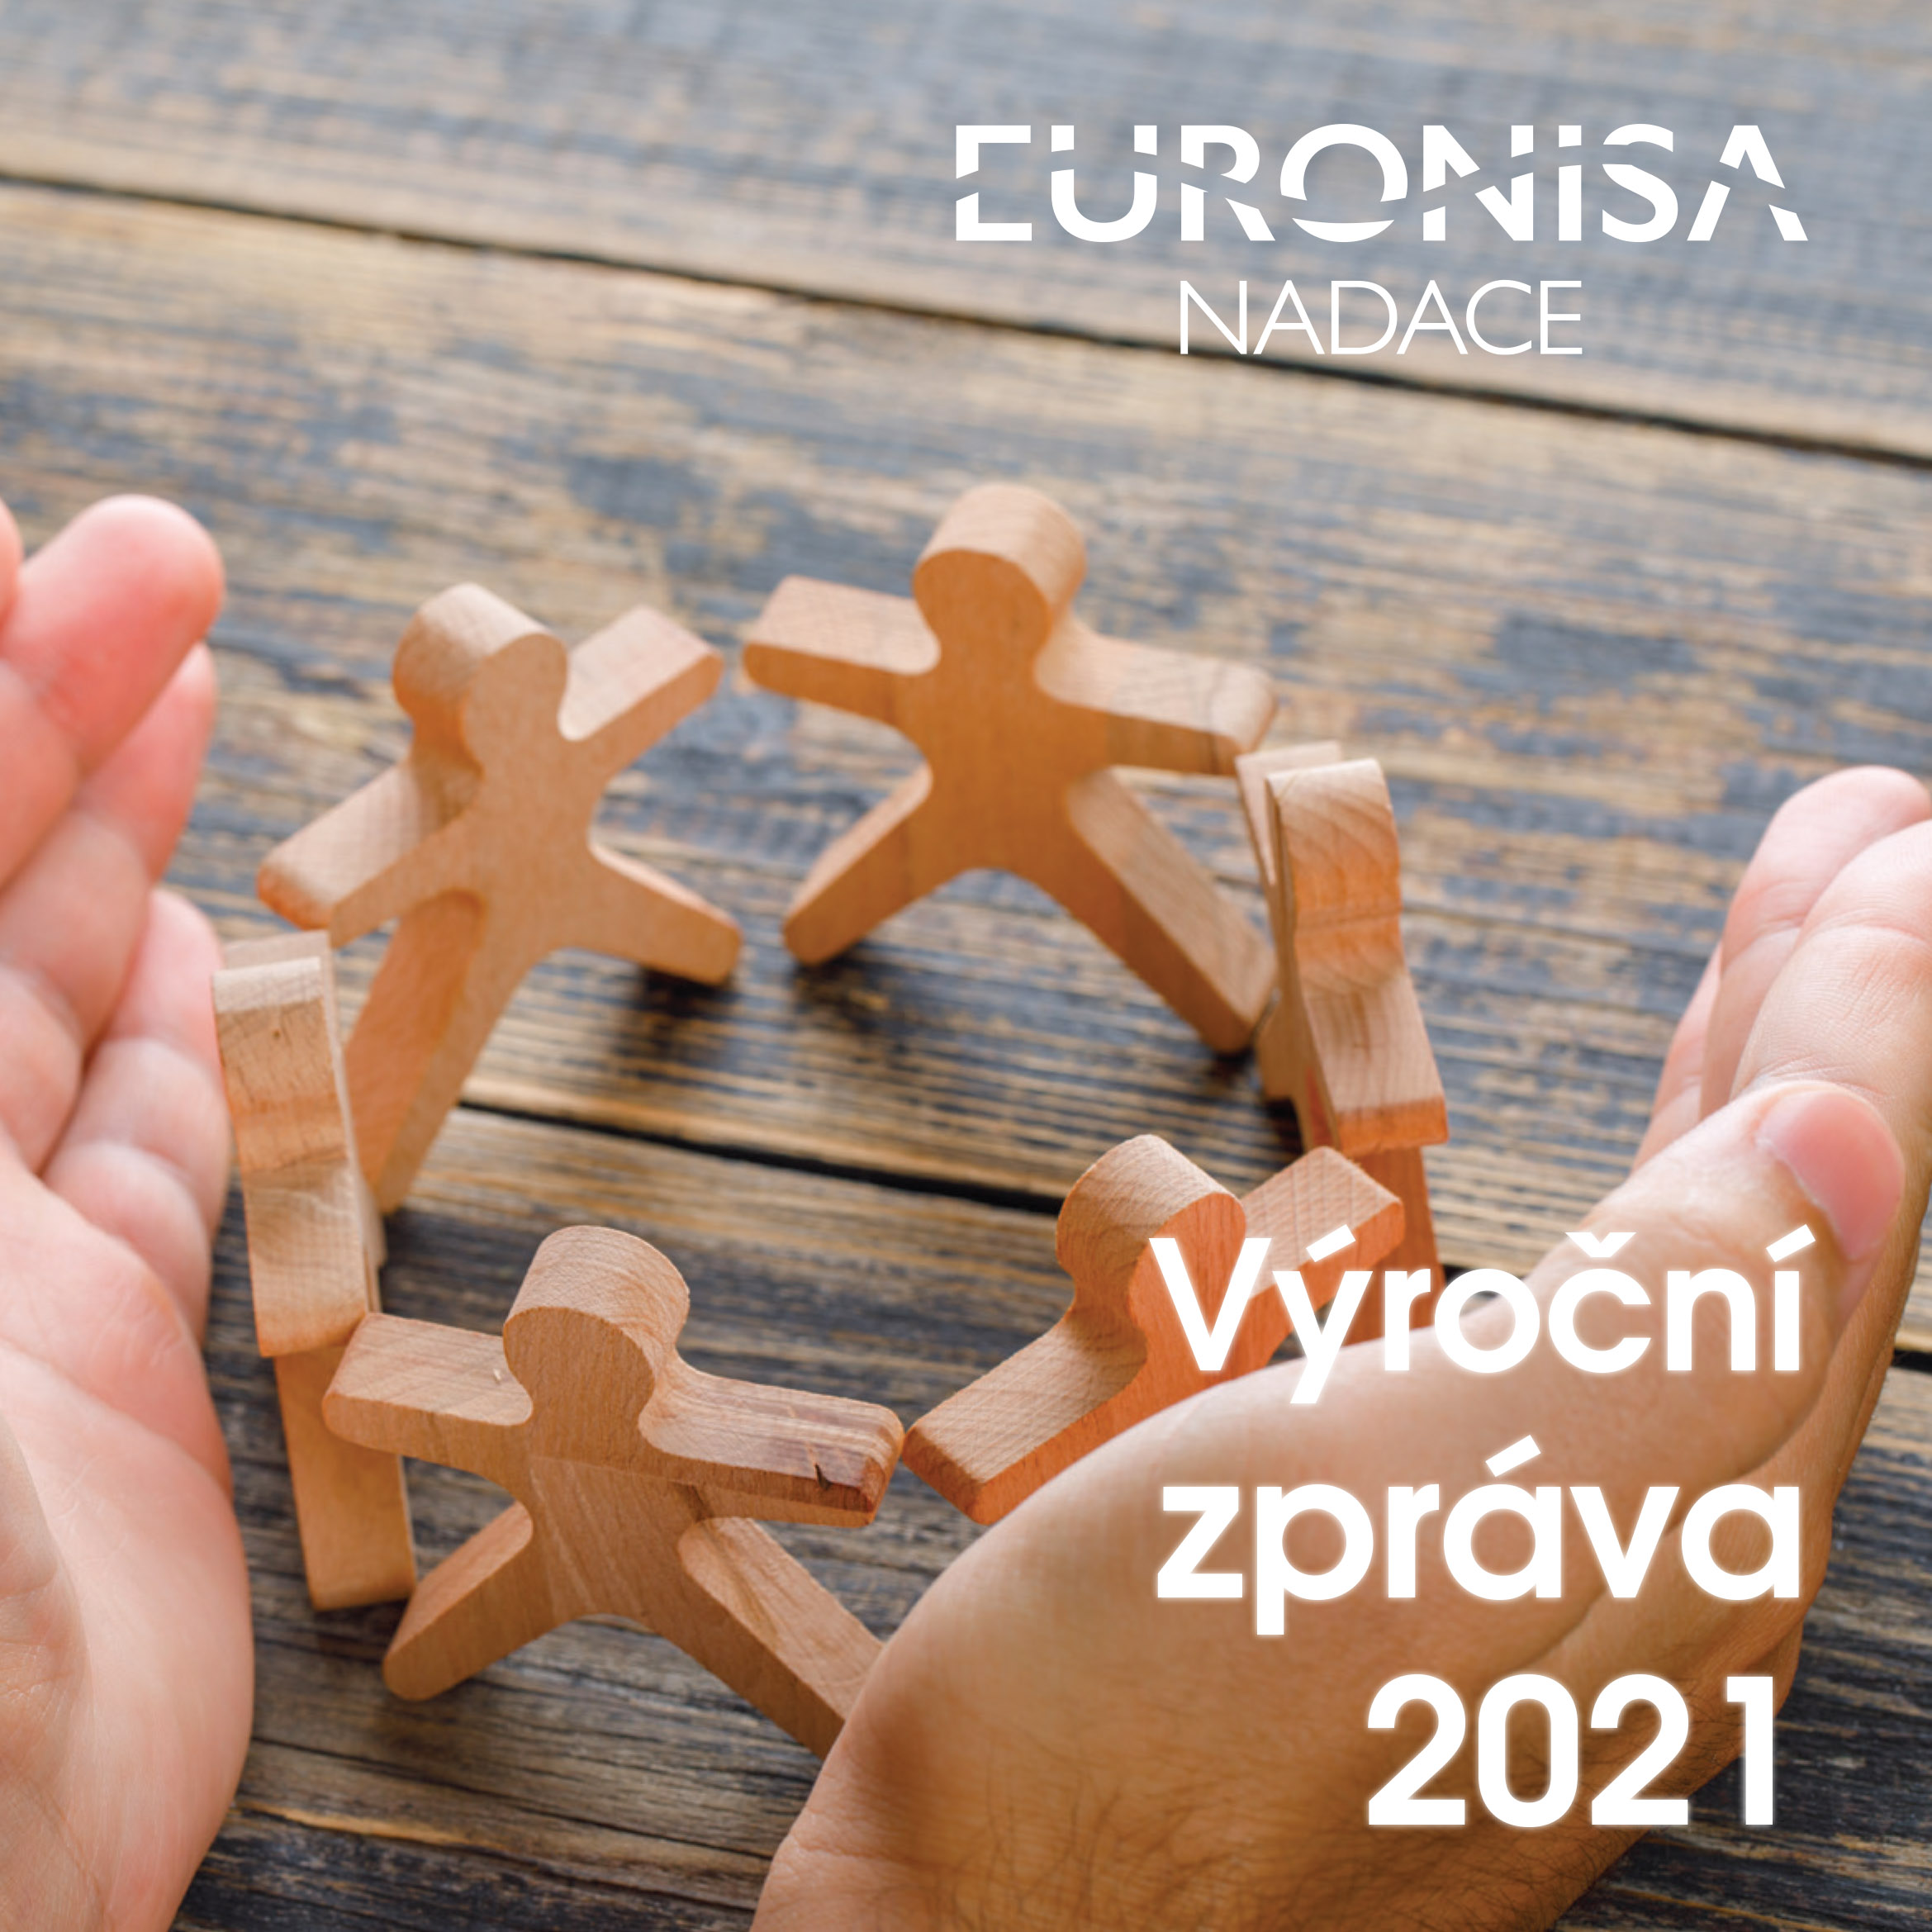 Vyšla nová Výroční zpráva Nadace EURONISA za rok 2021